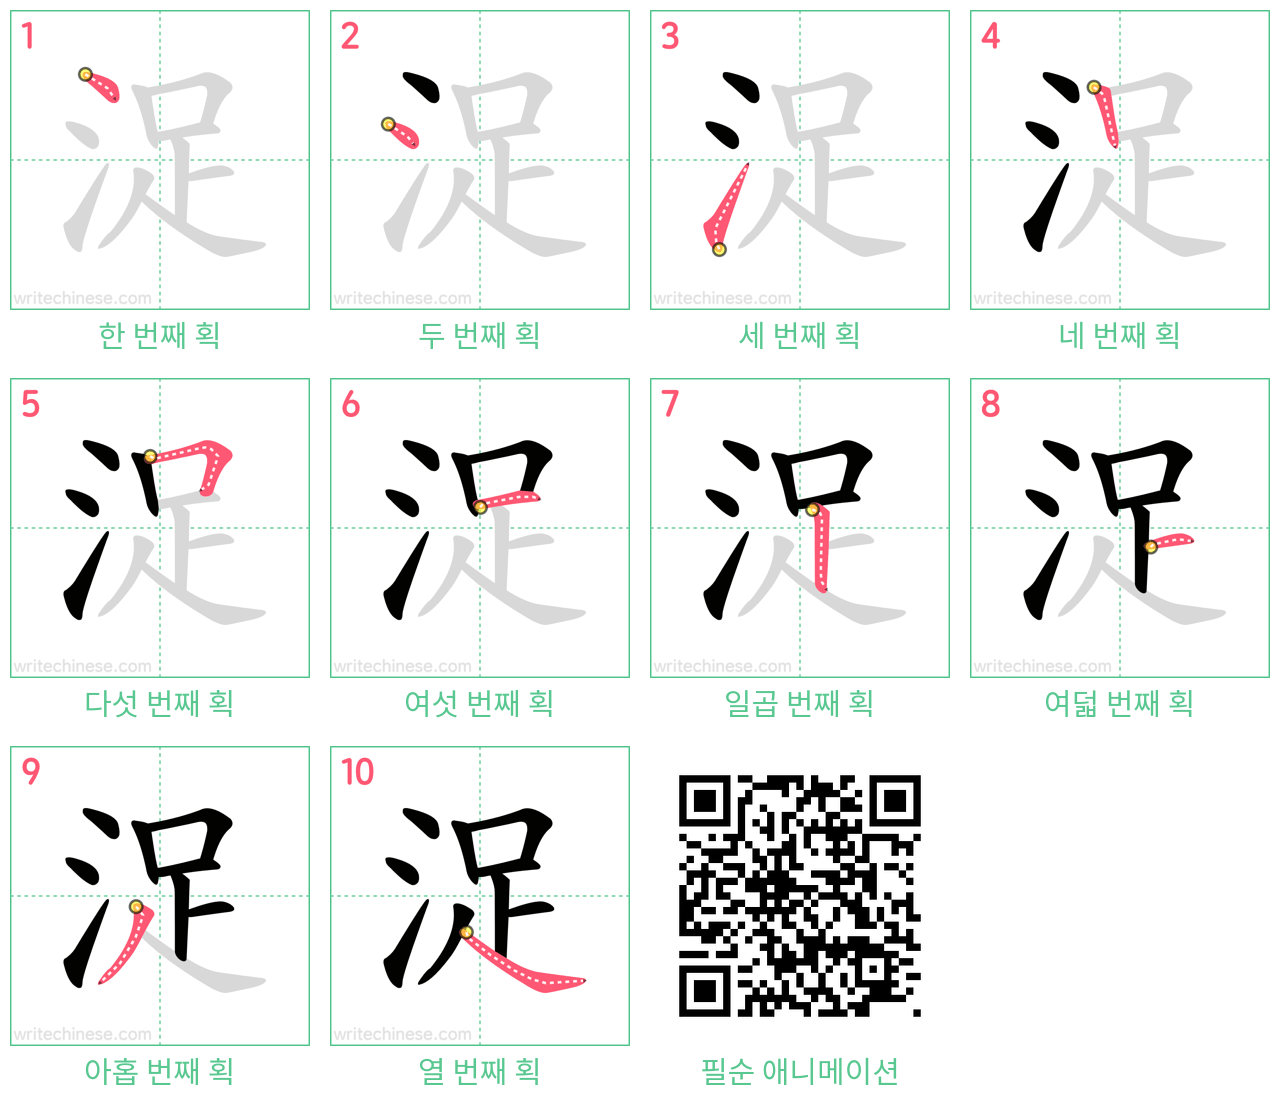 浞 step-by-step stroke order diagrams